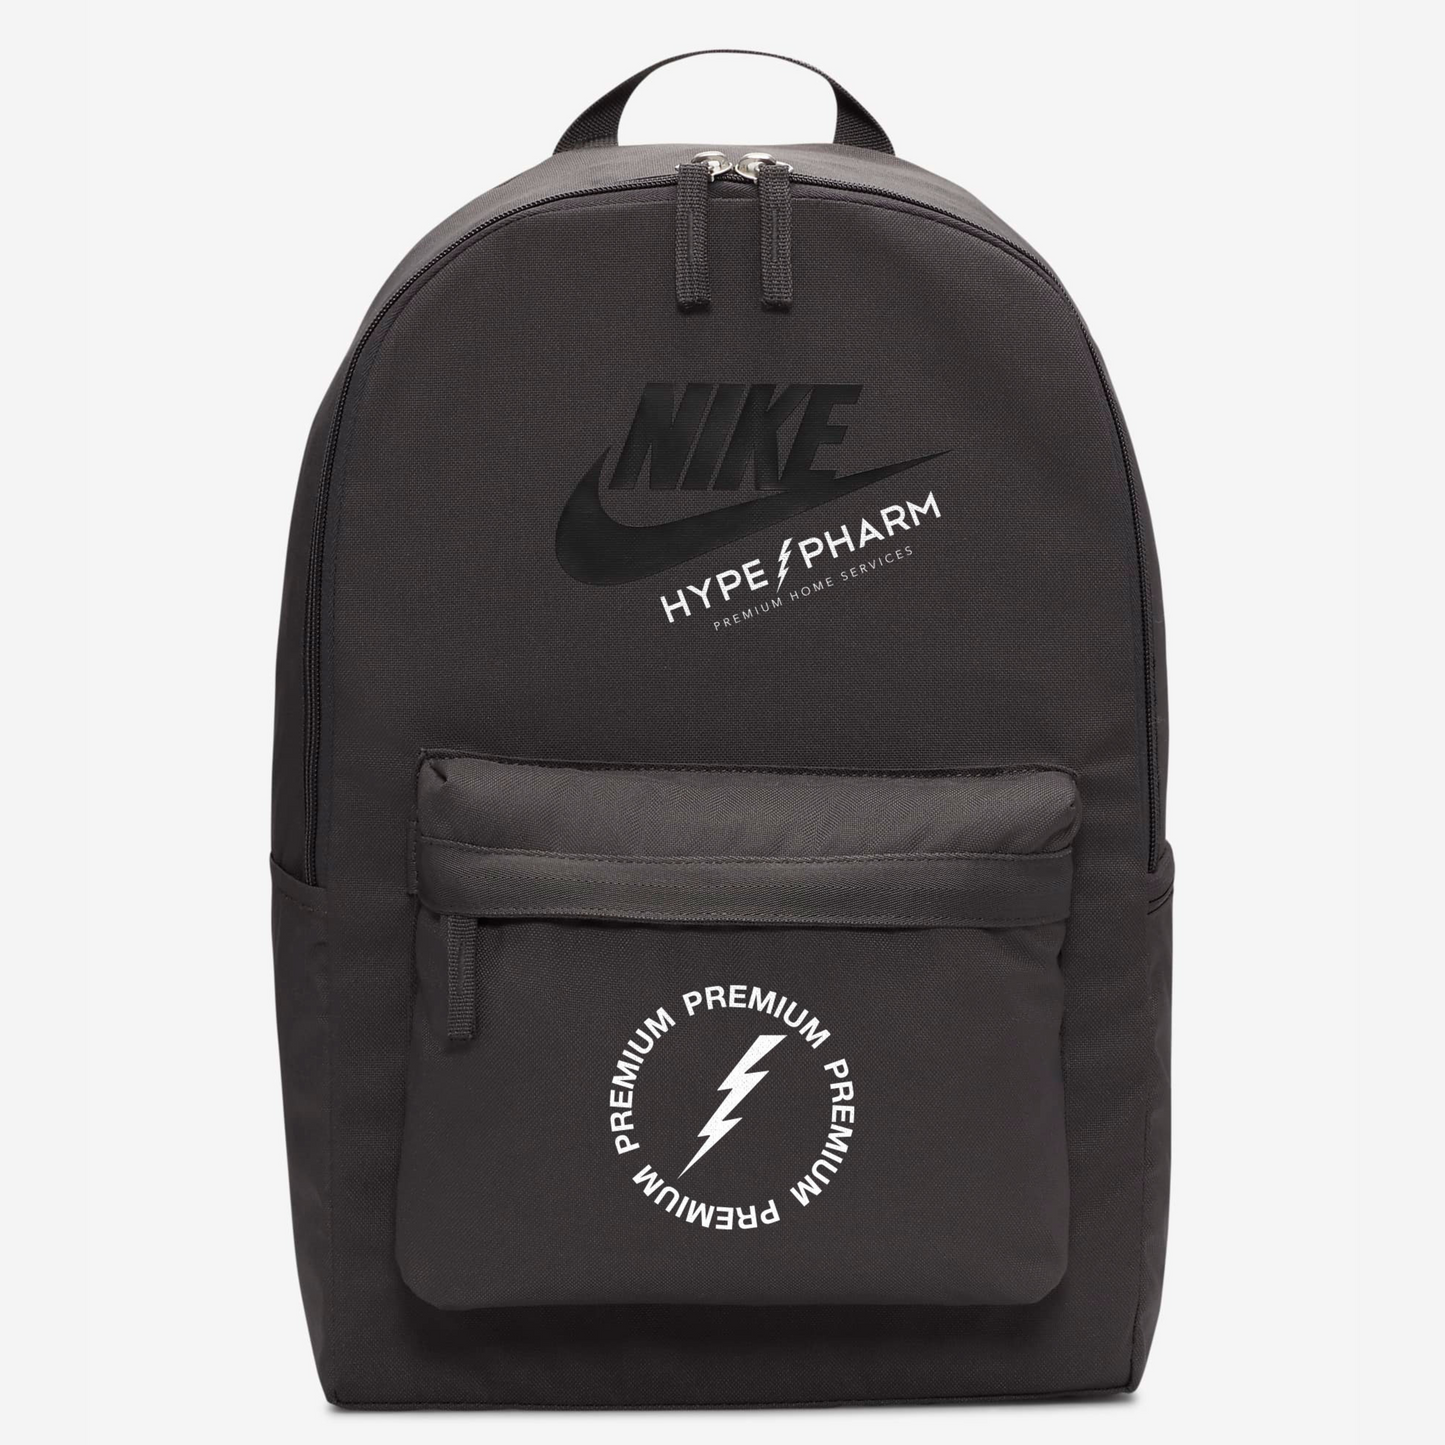 Hype Pharm Backpack